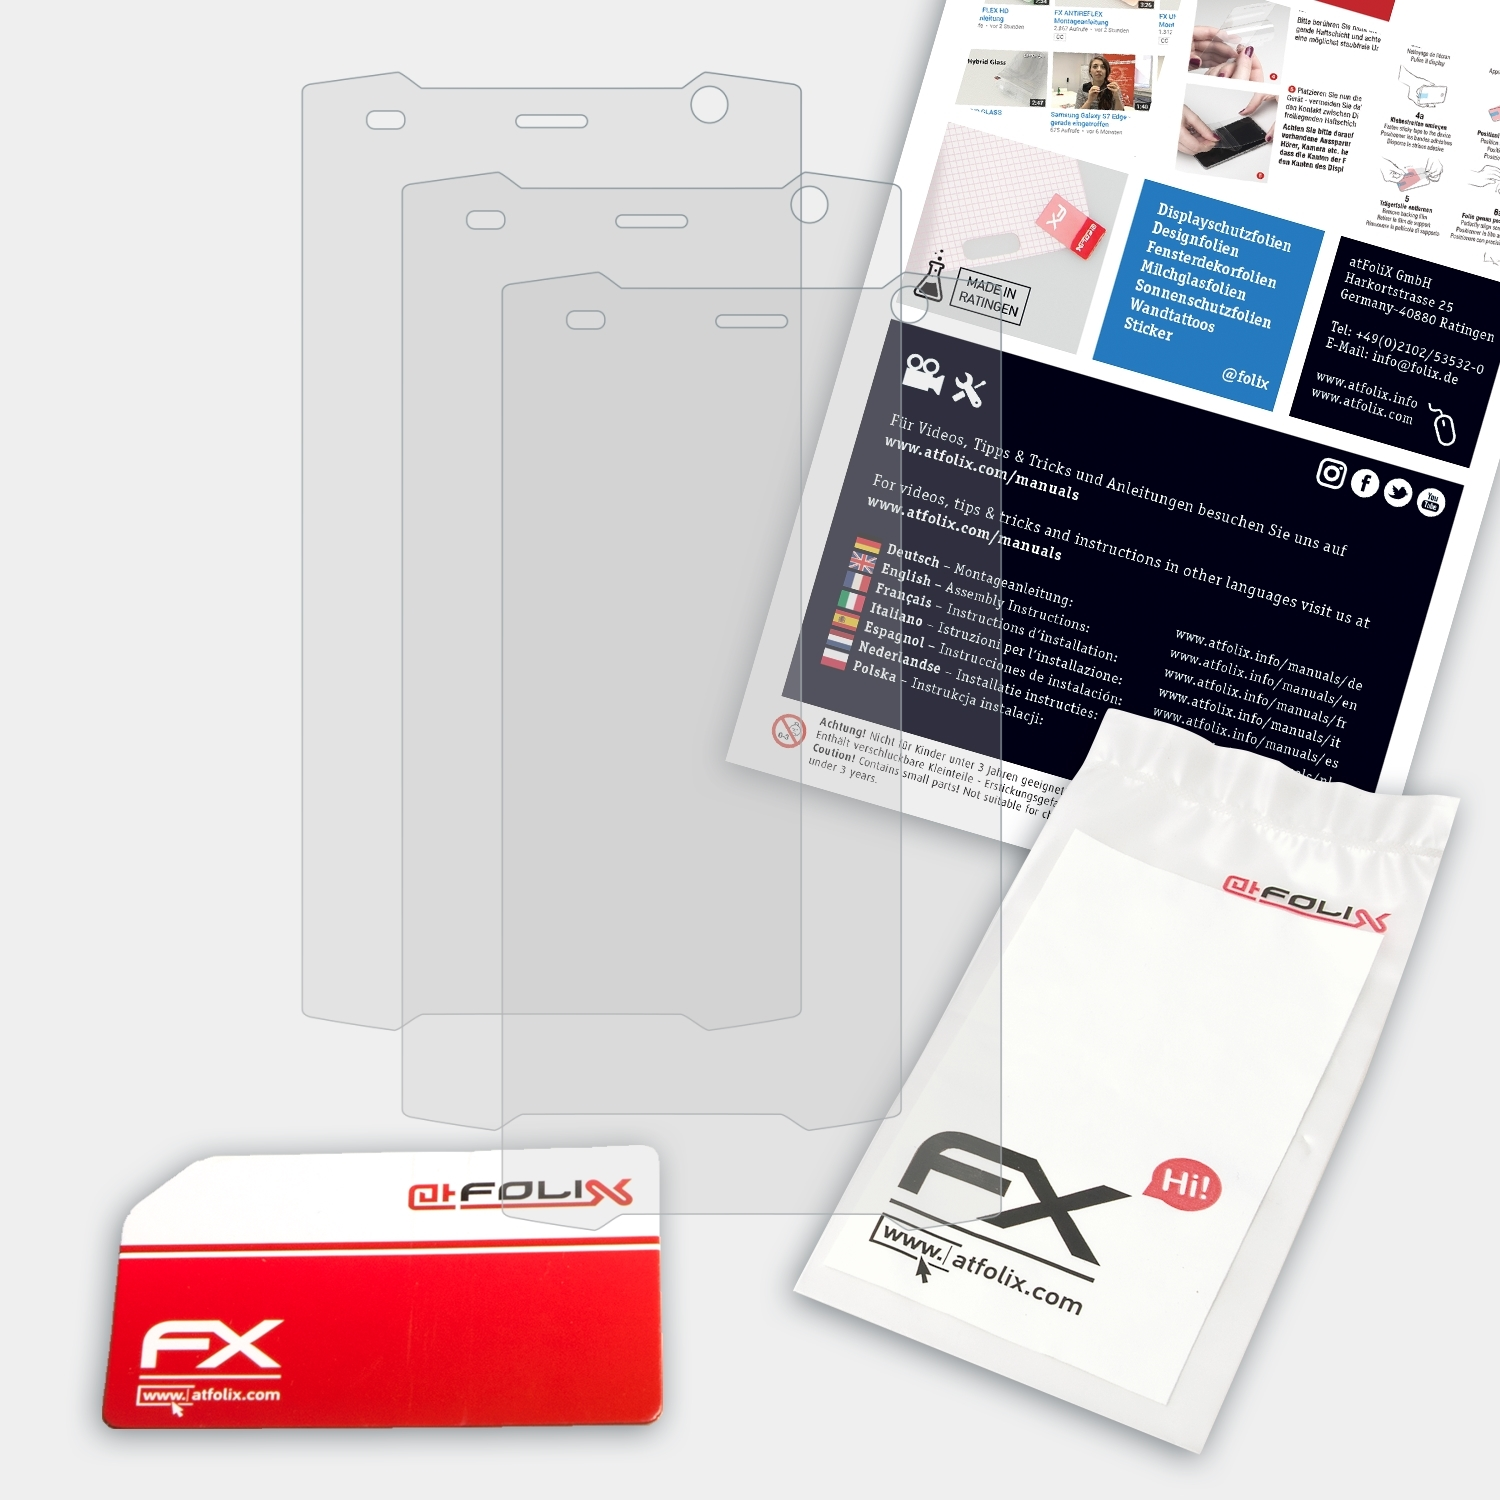 3x FX-Antireflex RugGear RG530) ATFOLIX Displayschutz(für